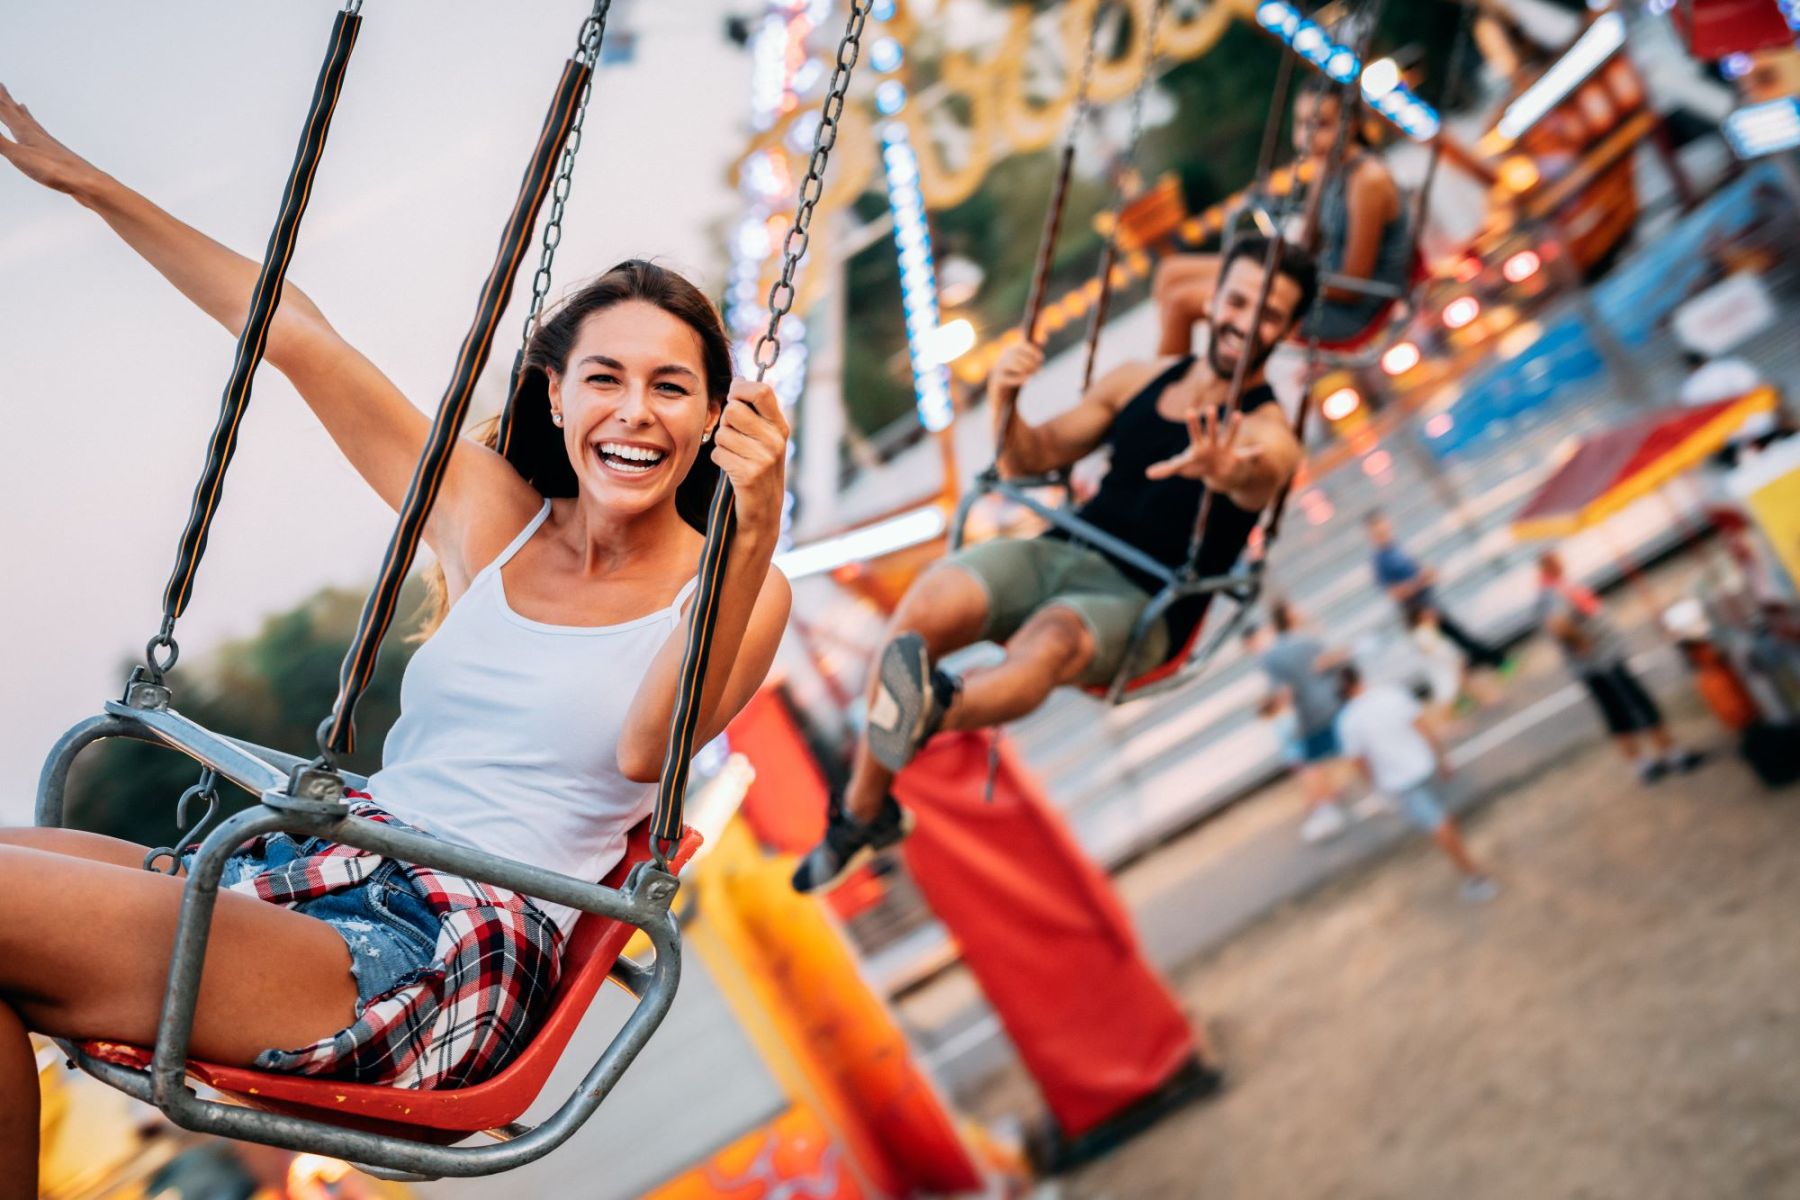 woman enjoying swing ride at carnival